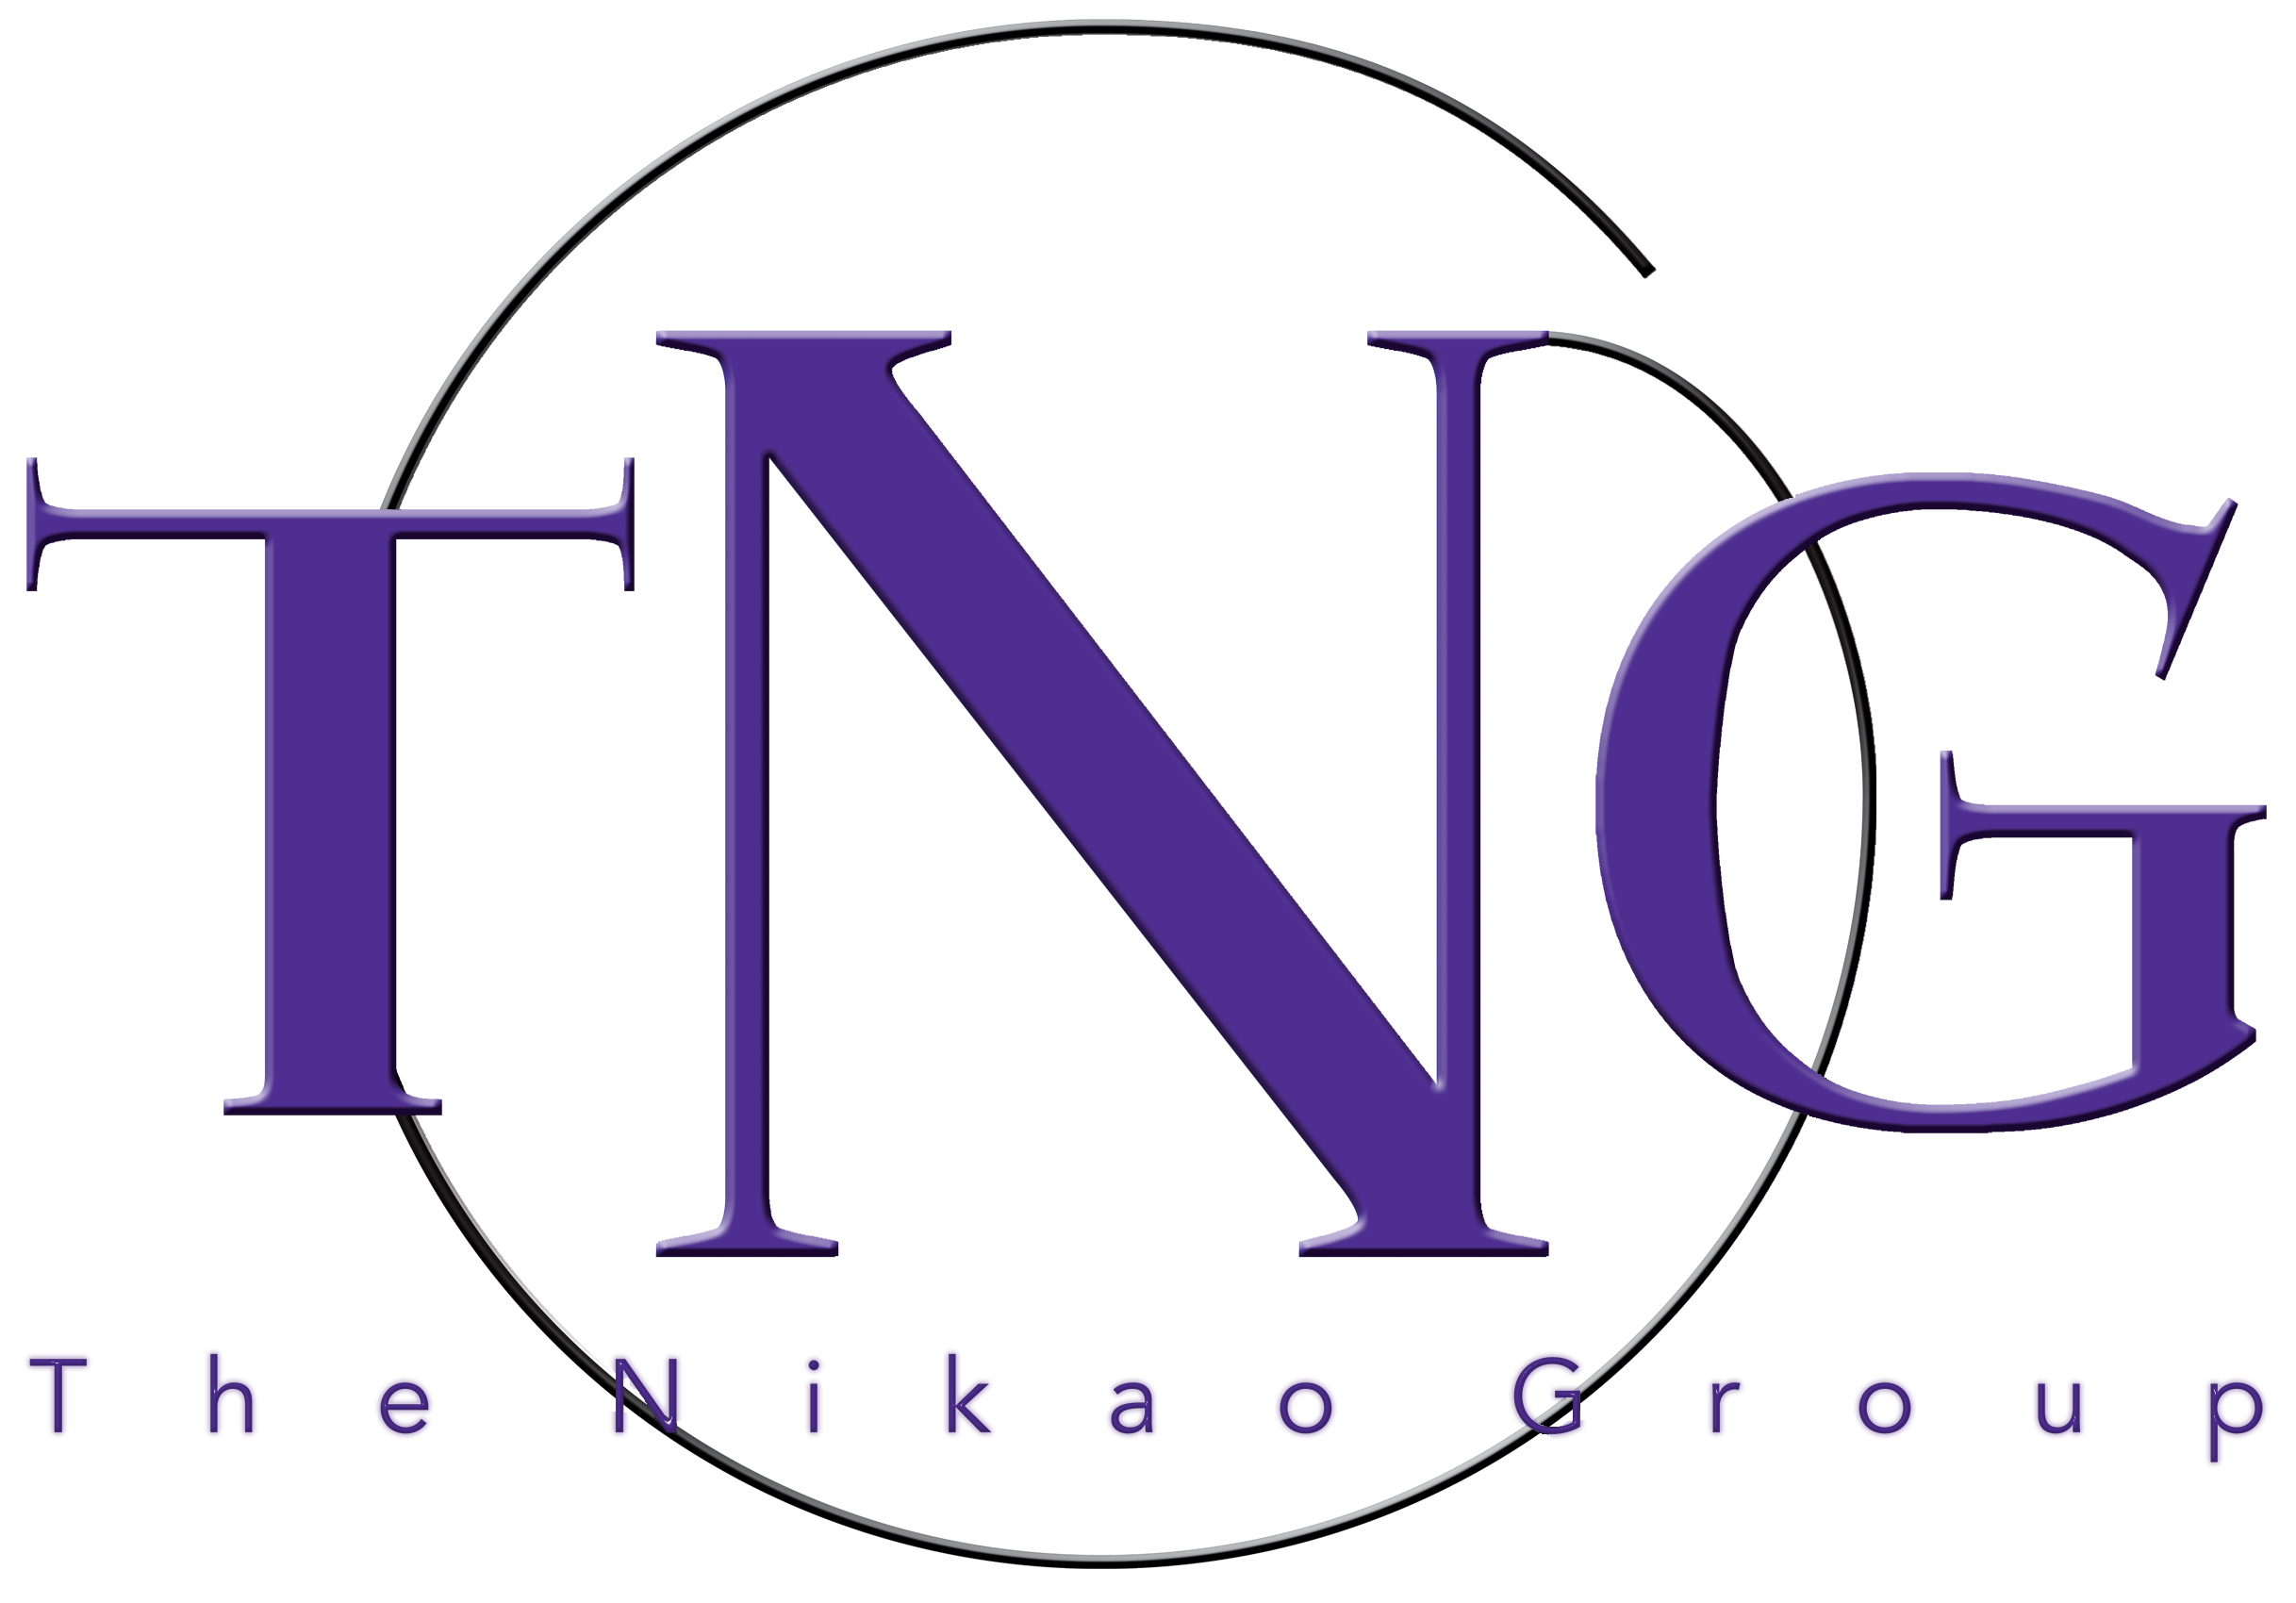 Nikao Group LLC